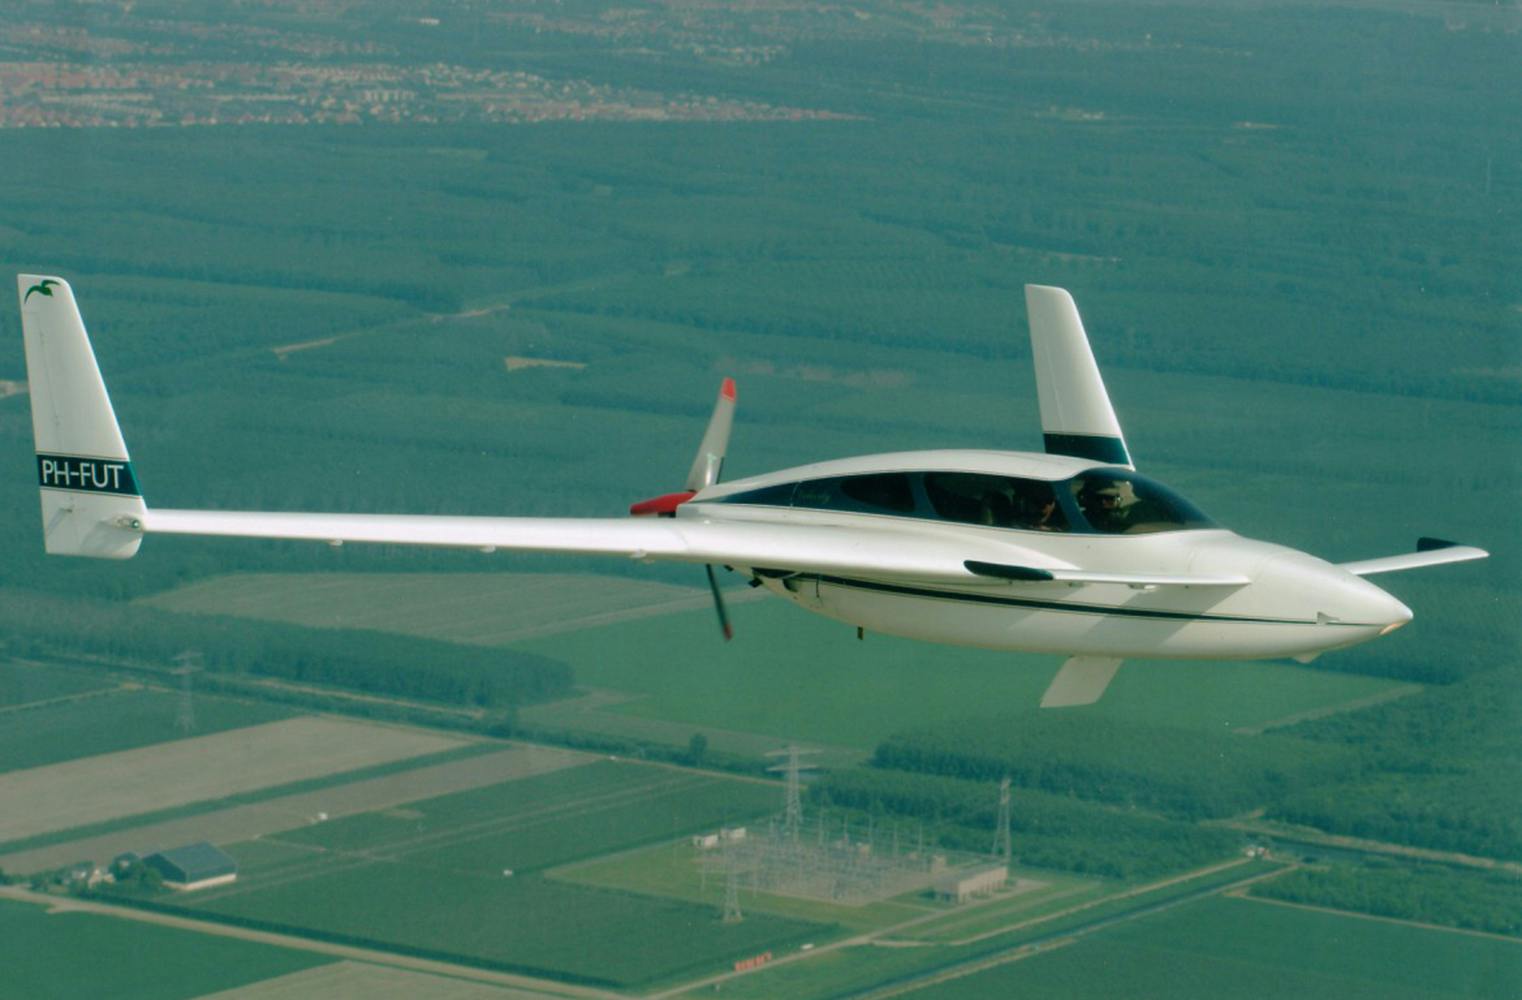 Ultraleichtflugzeug selbst fliegen | Pilot sein | 60 Minuten